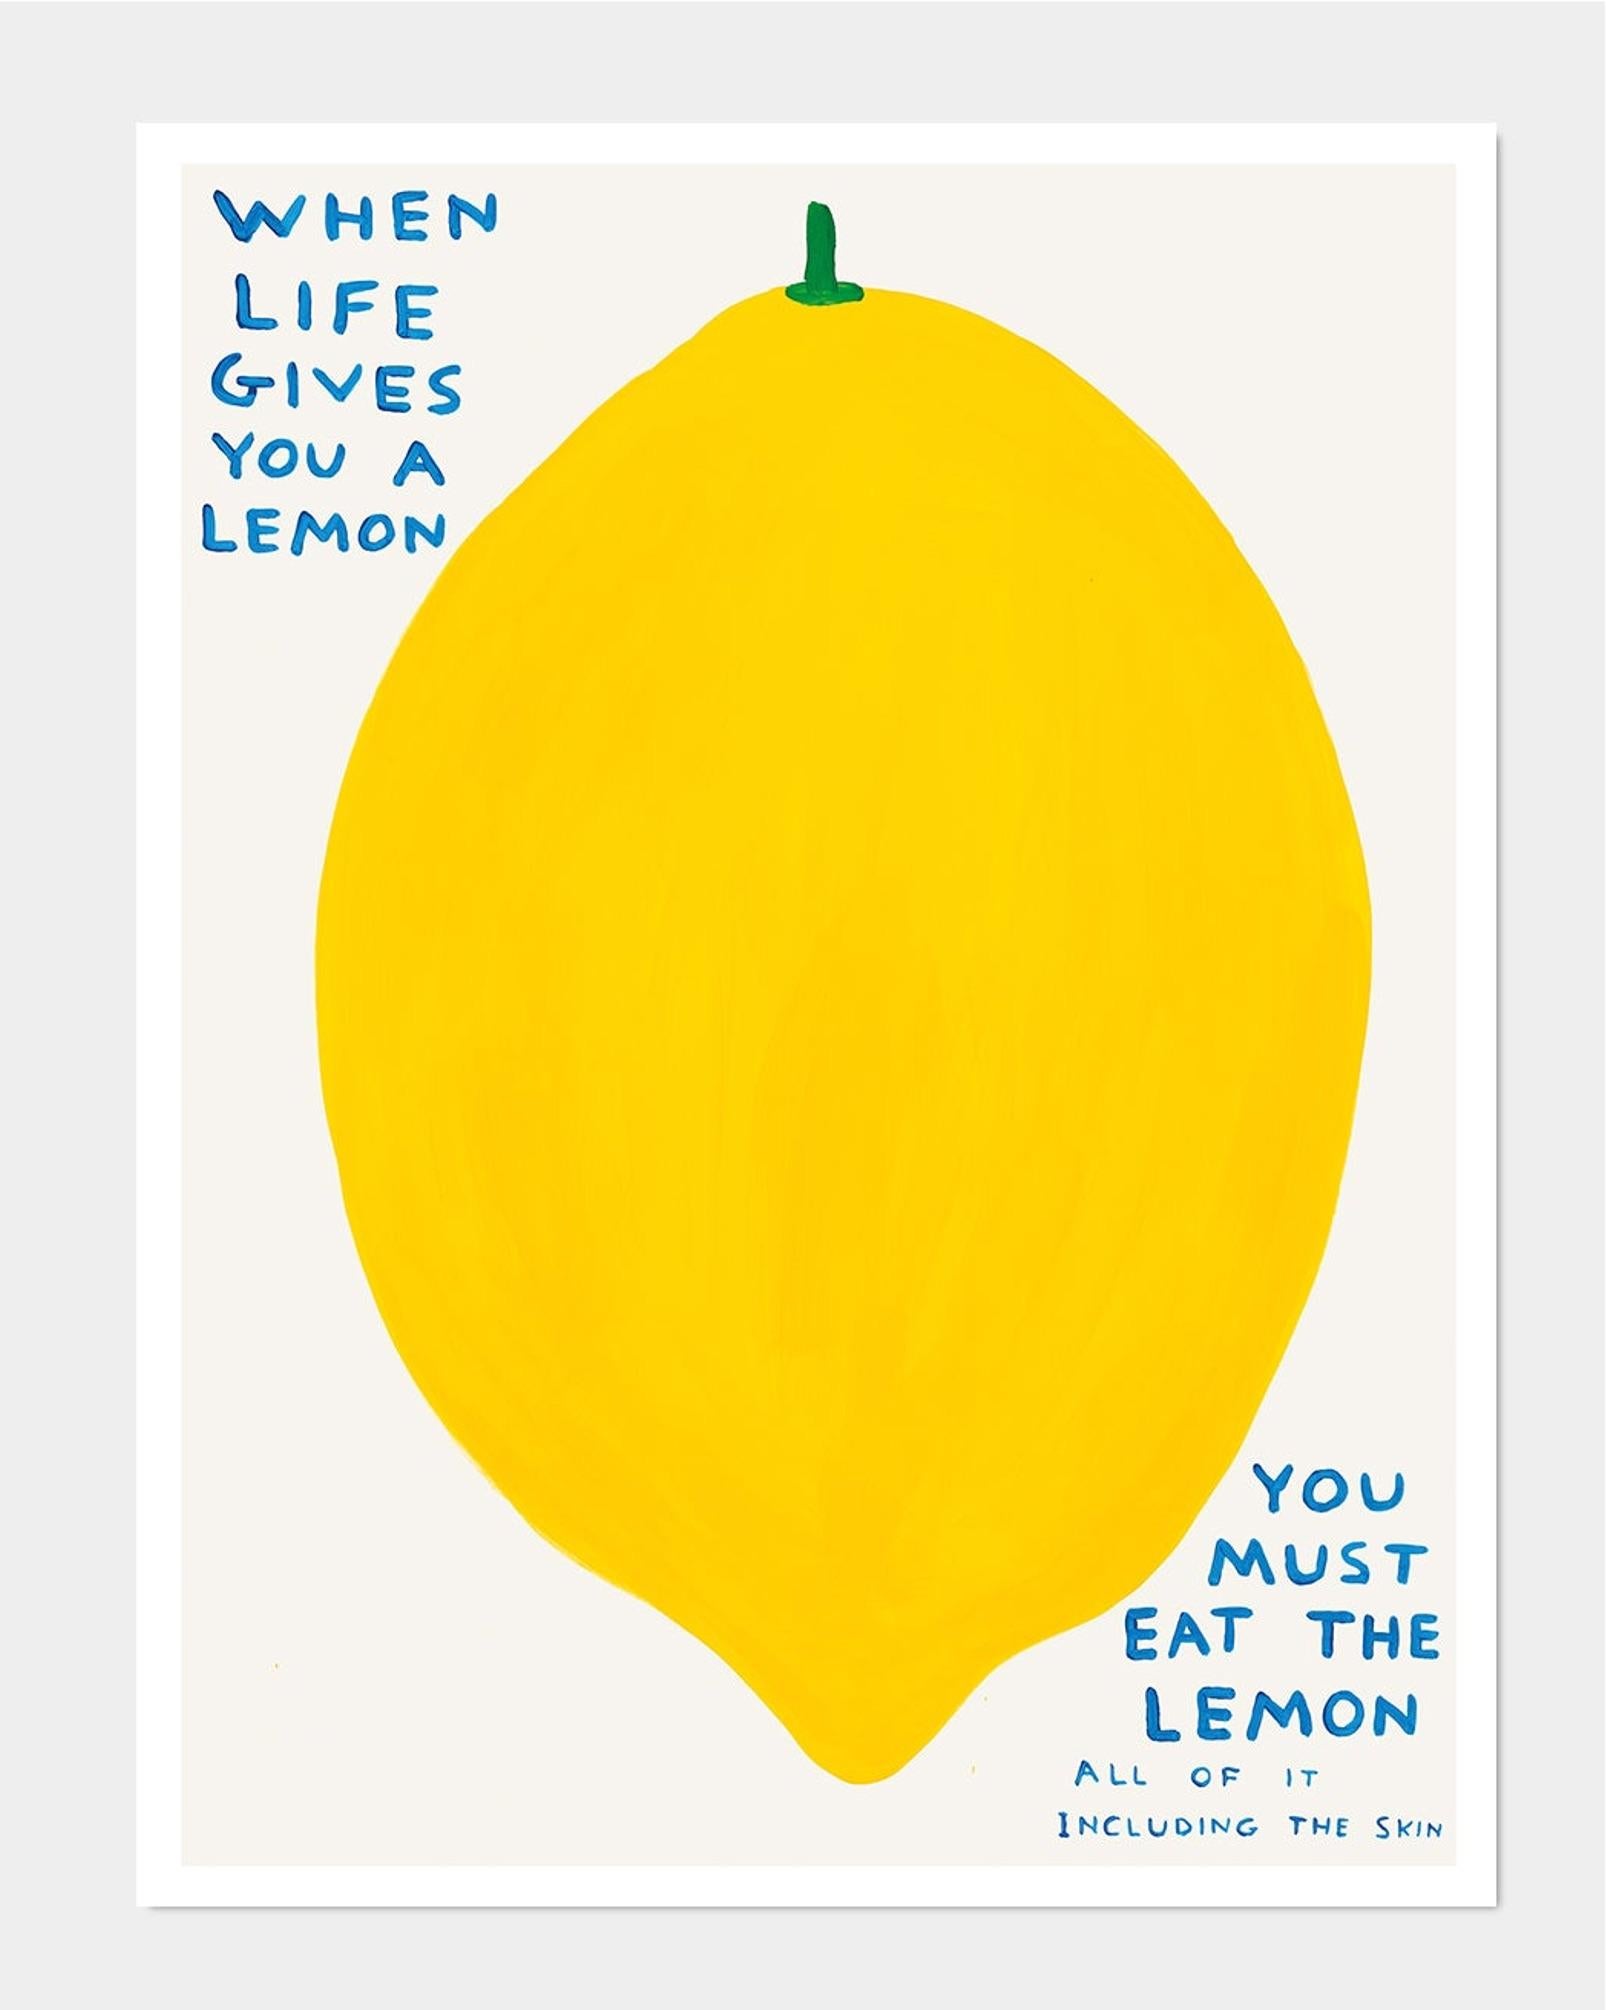 David Shrigley
Quand la vie vous donne un citron, 2021
80 x 60 cm
Lithographie offset
Imprimé sur papier Munken Lynx 200g